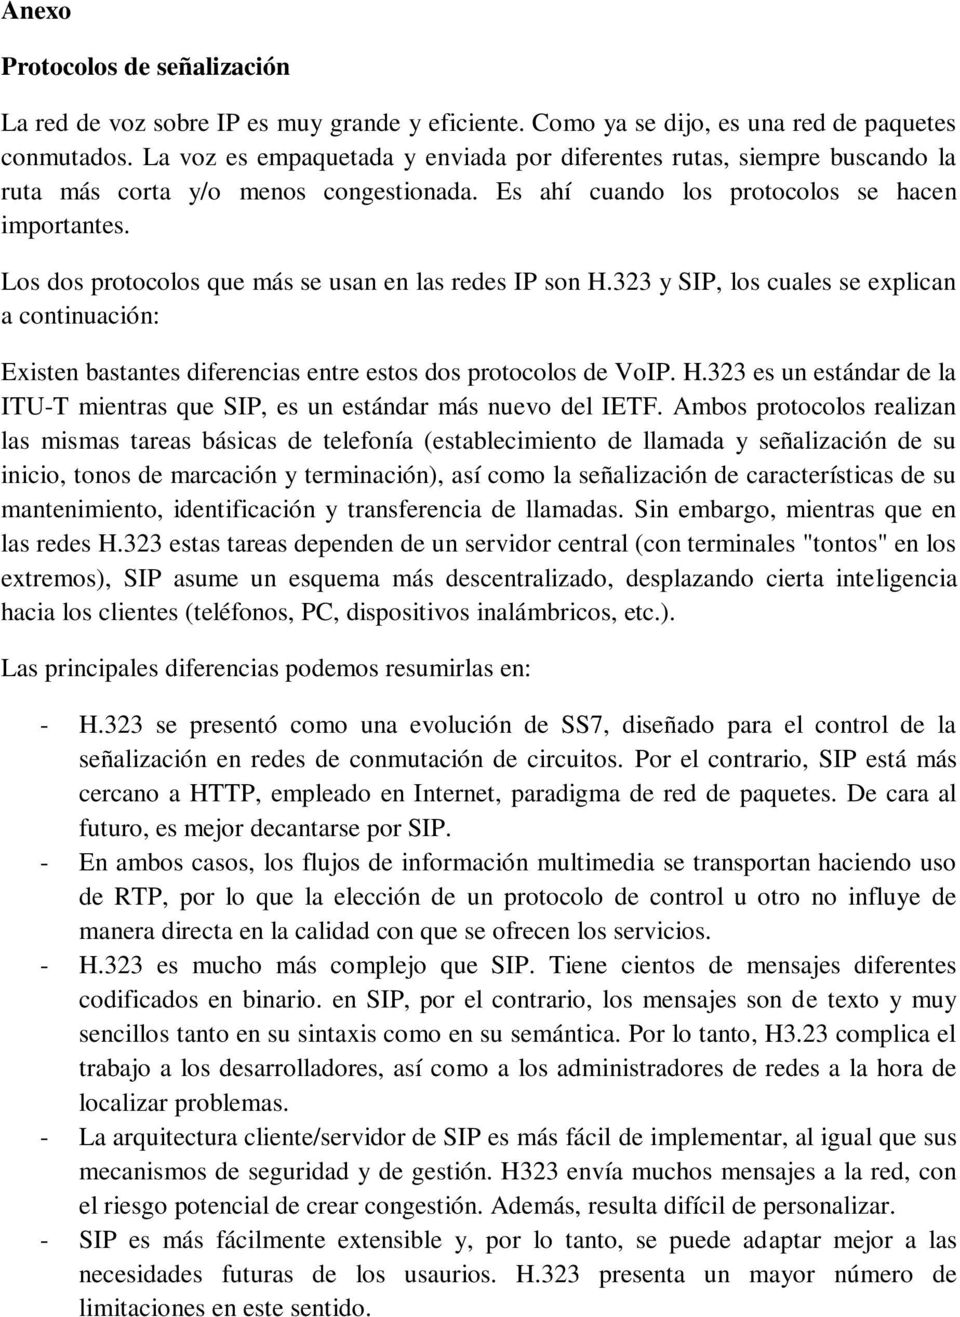 Los dos protocolos que más se usan en las redes IP son H.323 y SIP, los cuales se explican a continuación: Existen bastantes diferencias entre estos dos protocolos de VoIP. H.323 es un estándar de la ITU-T mientras que SIP, es un estándar más nuevo del IETF.